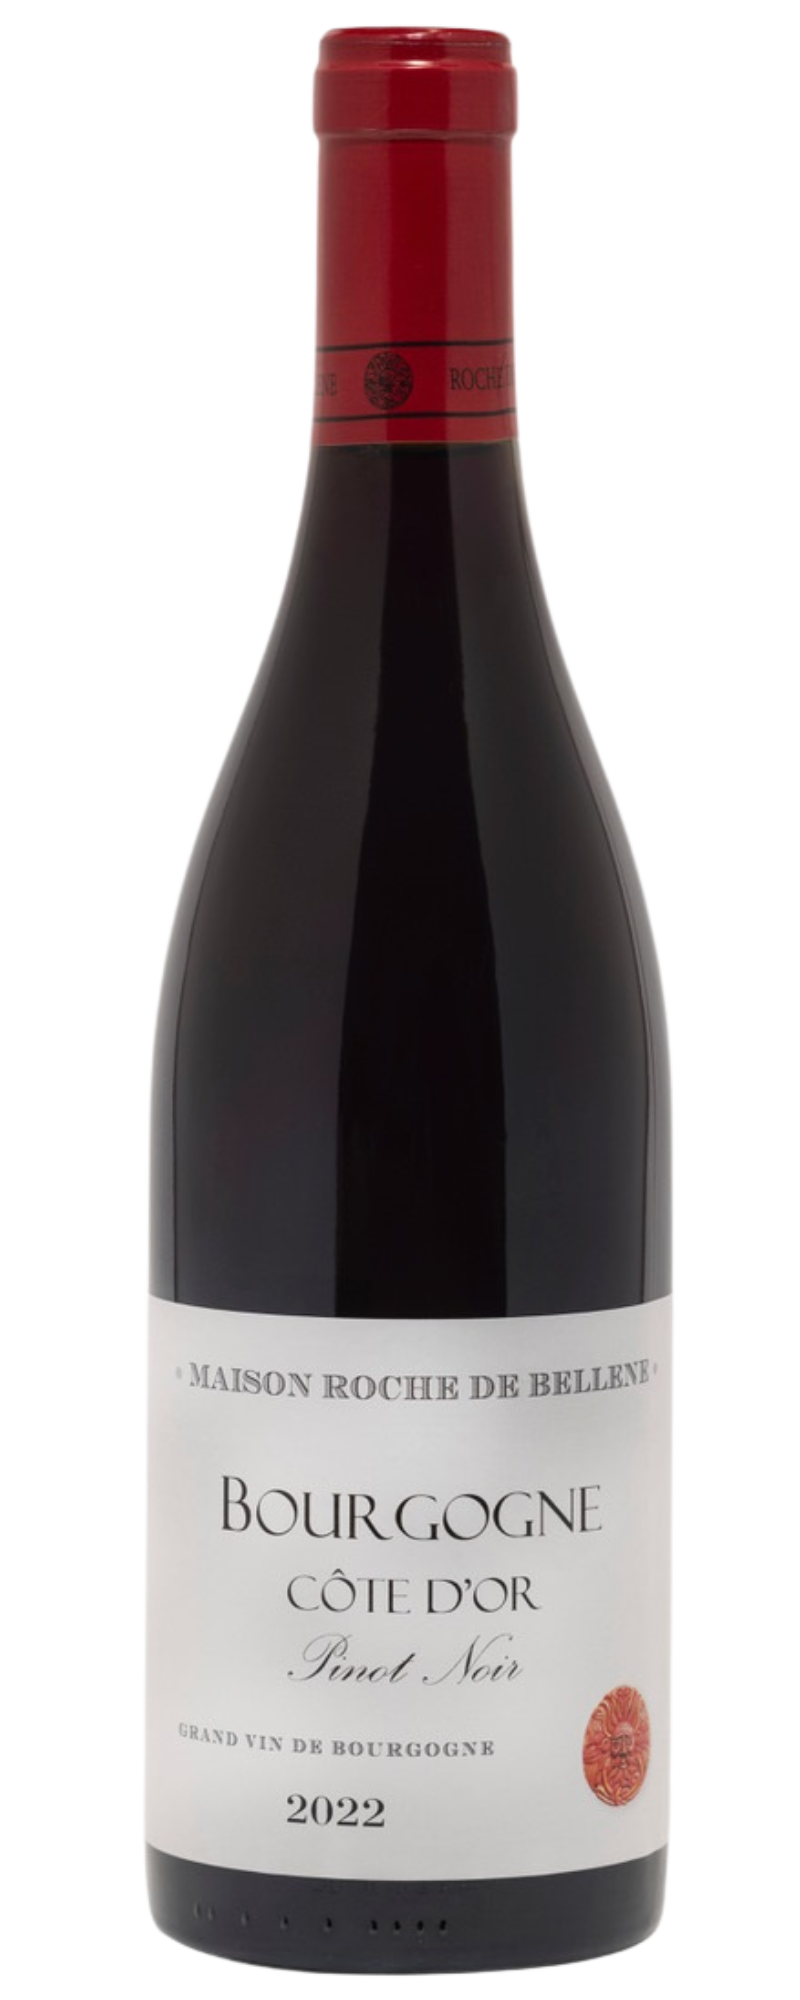 Roche de Bellene Bourgogne Côte d'Or Pinot Noir 2022